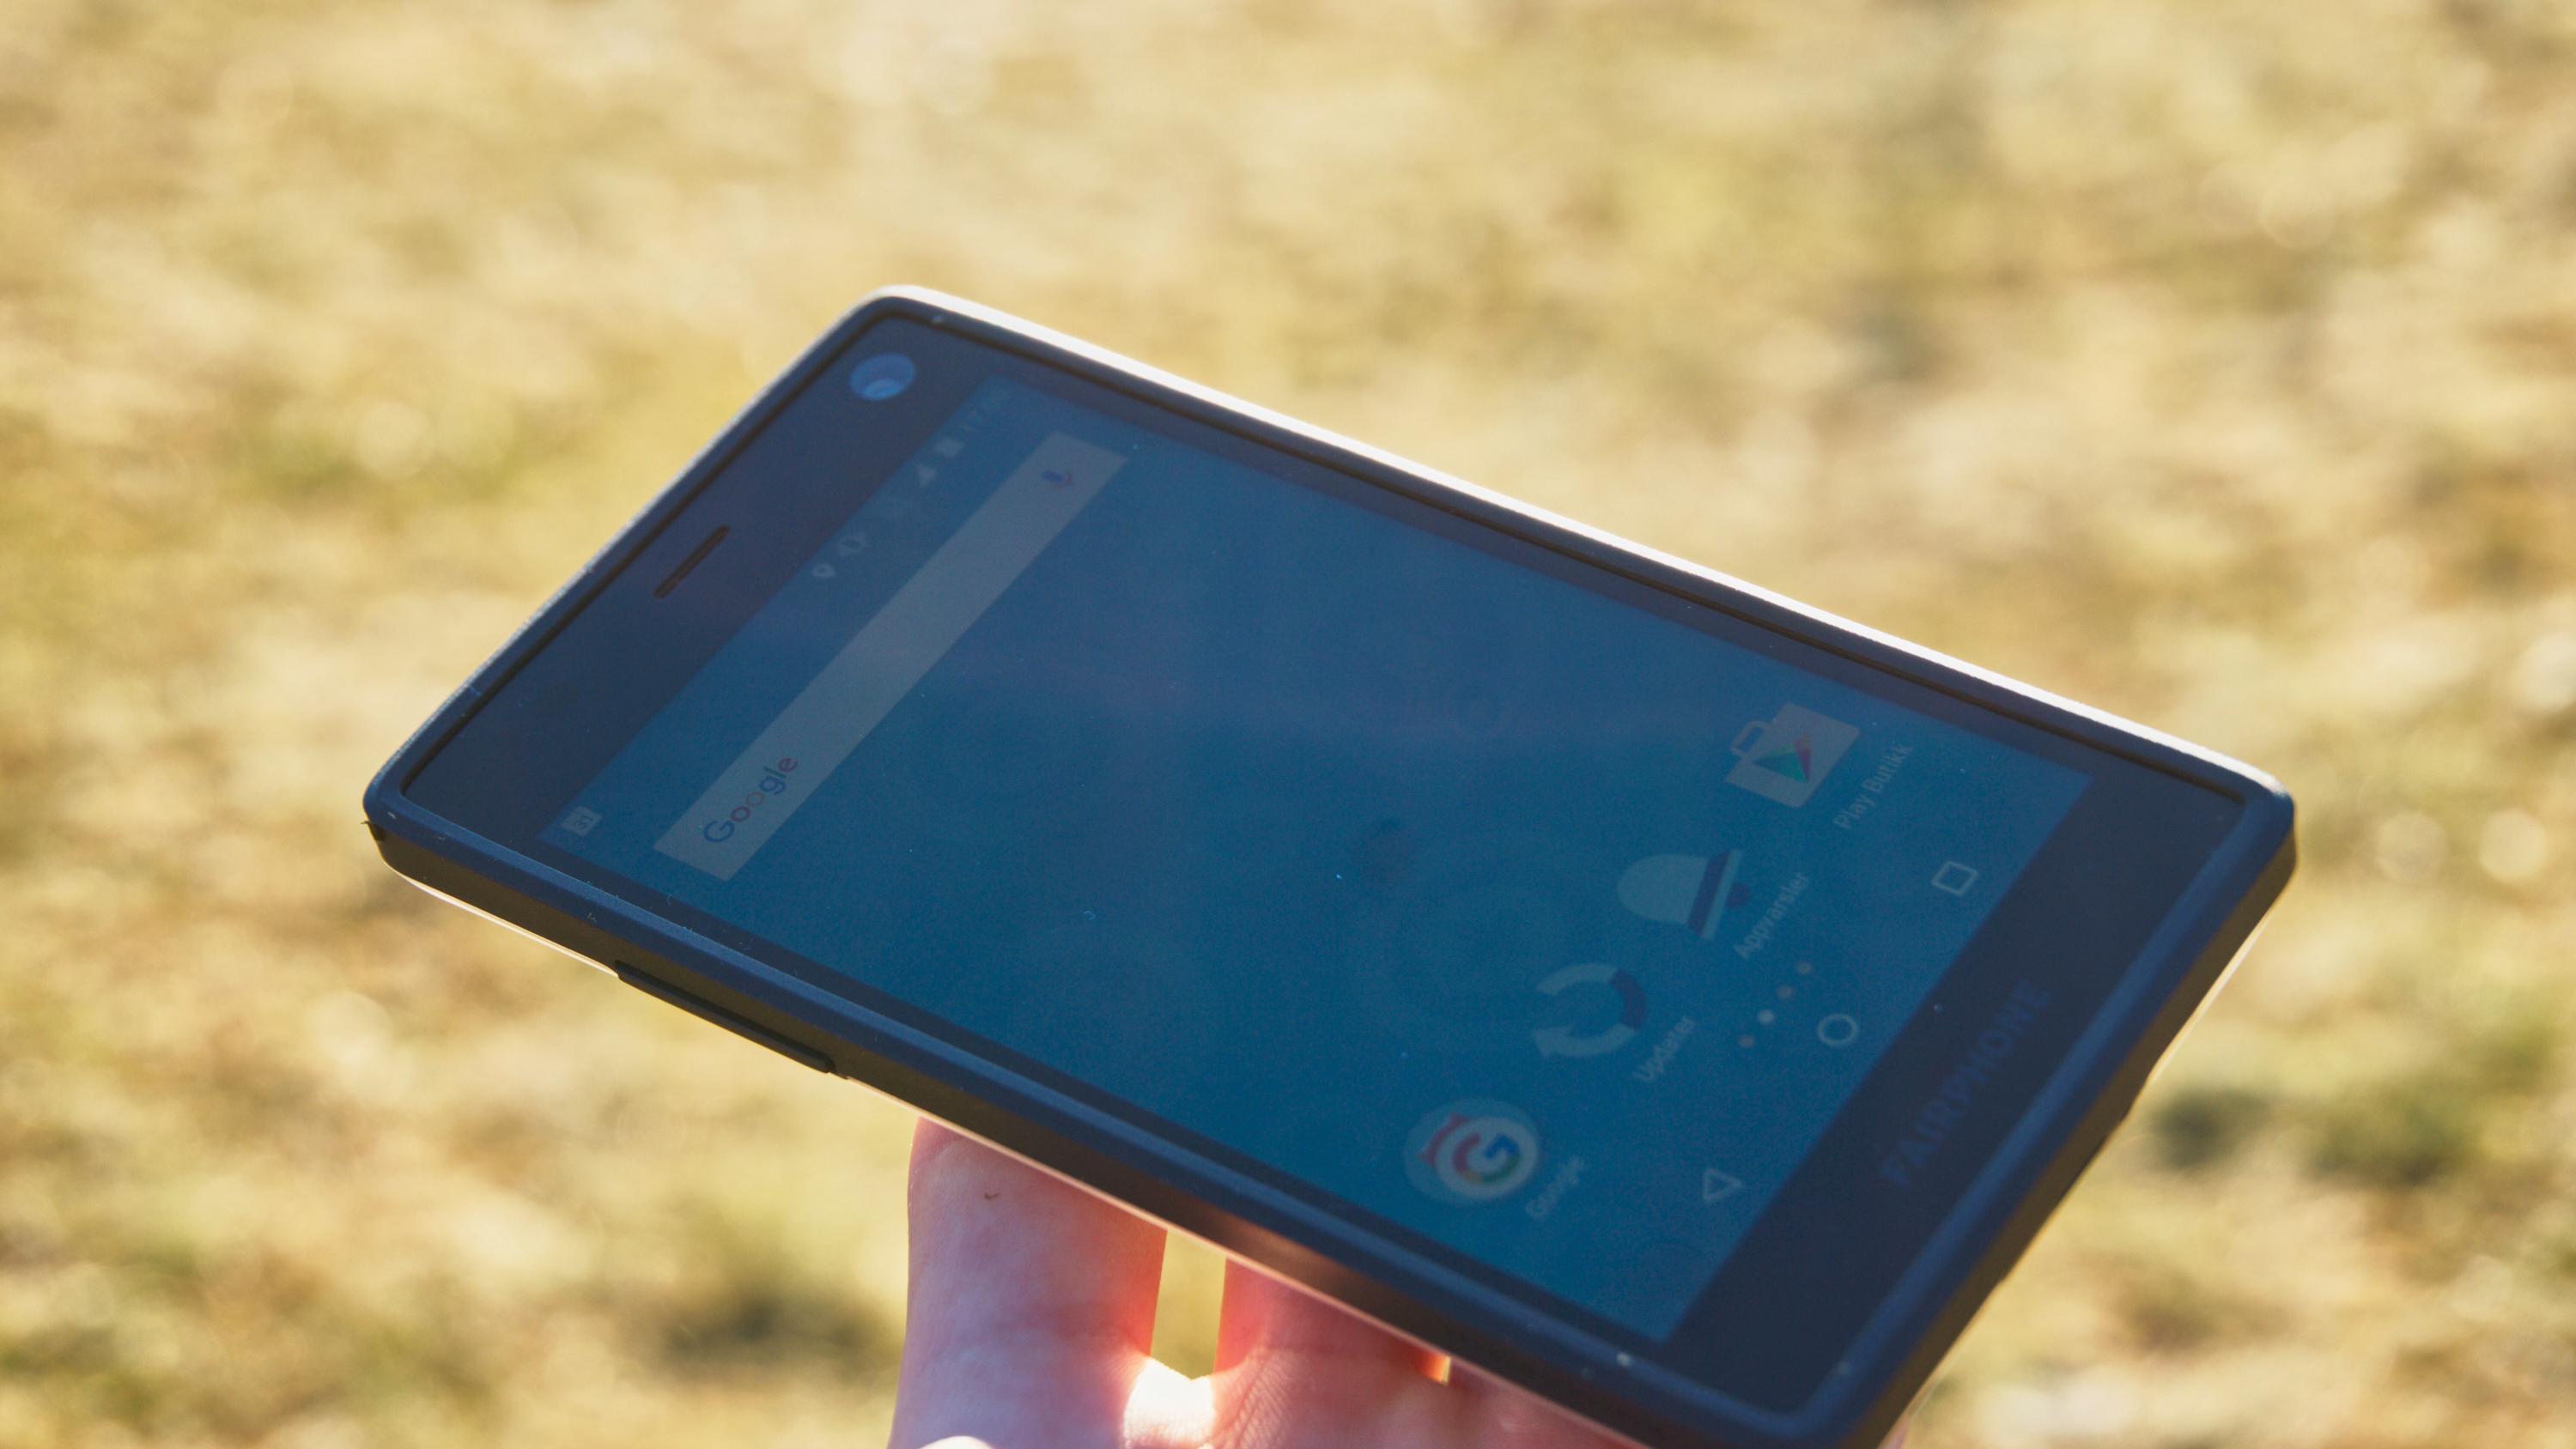 Skjermen er god, og kan fint leses i sollys. Den kan imidlertid ikke måle seg med eksempelvis skjermen i Samsungs nye toppmodell, Galaxy S7.